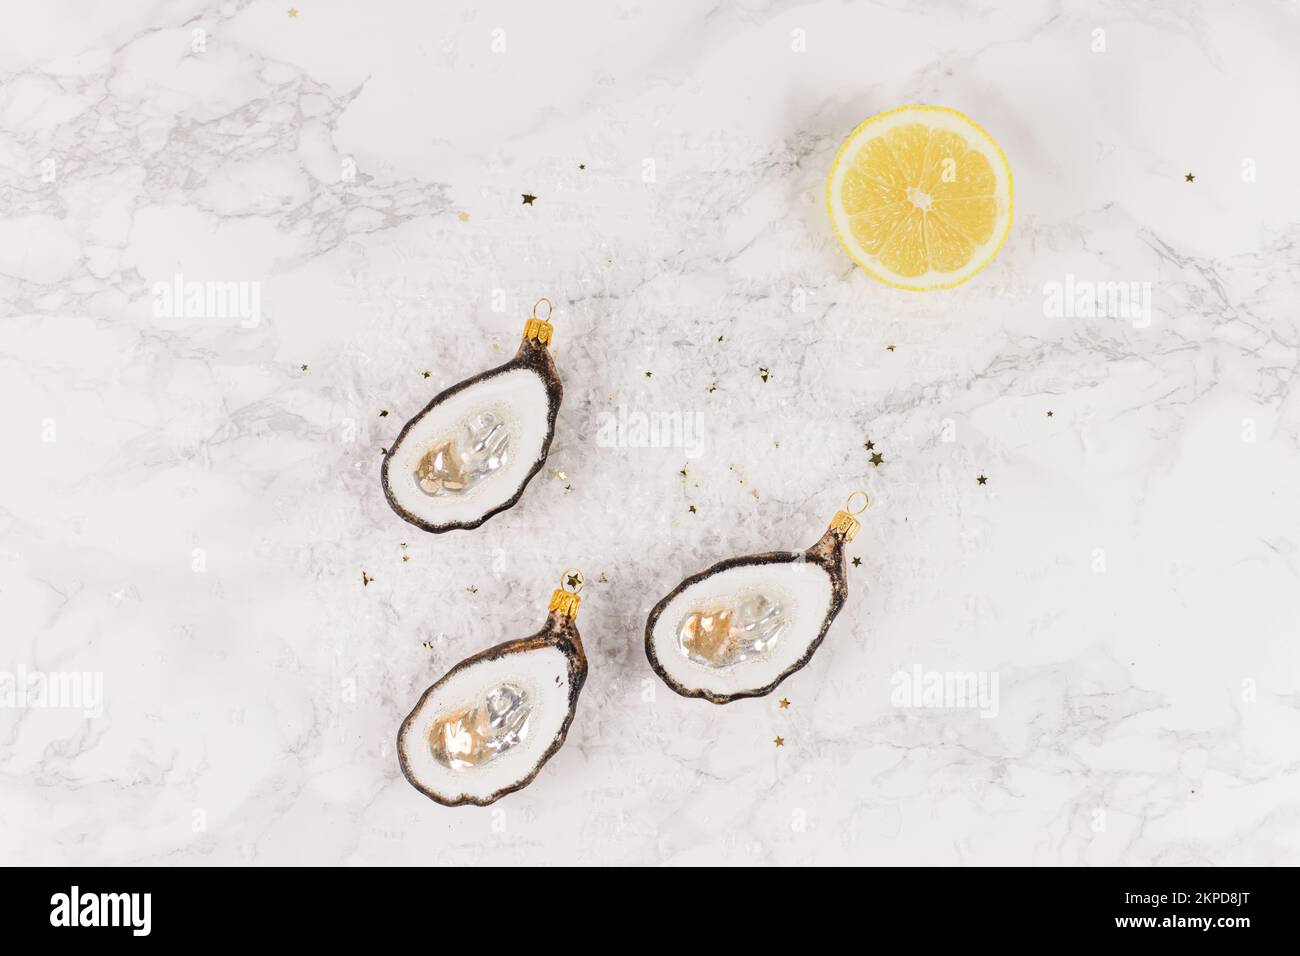 Drei Weihnachtsbaumkugeln in Form einer Auster liegen auf einem Marmortisch. Glitzer, Sterne und Zitronenscheiben schmücken das Bild. Stockfoto